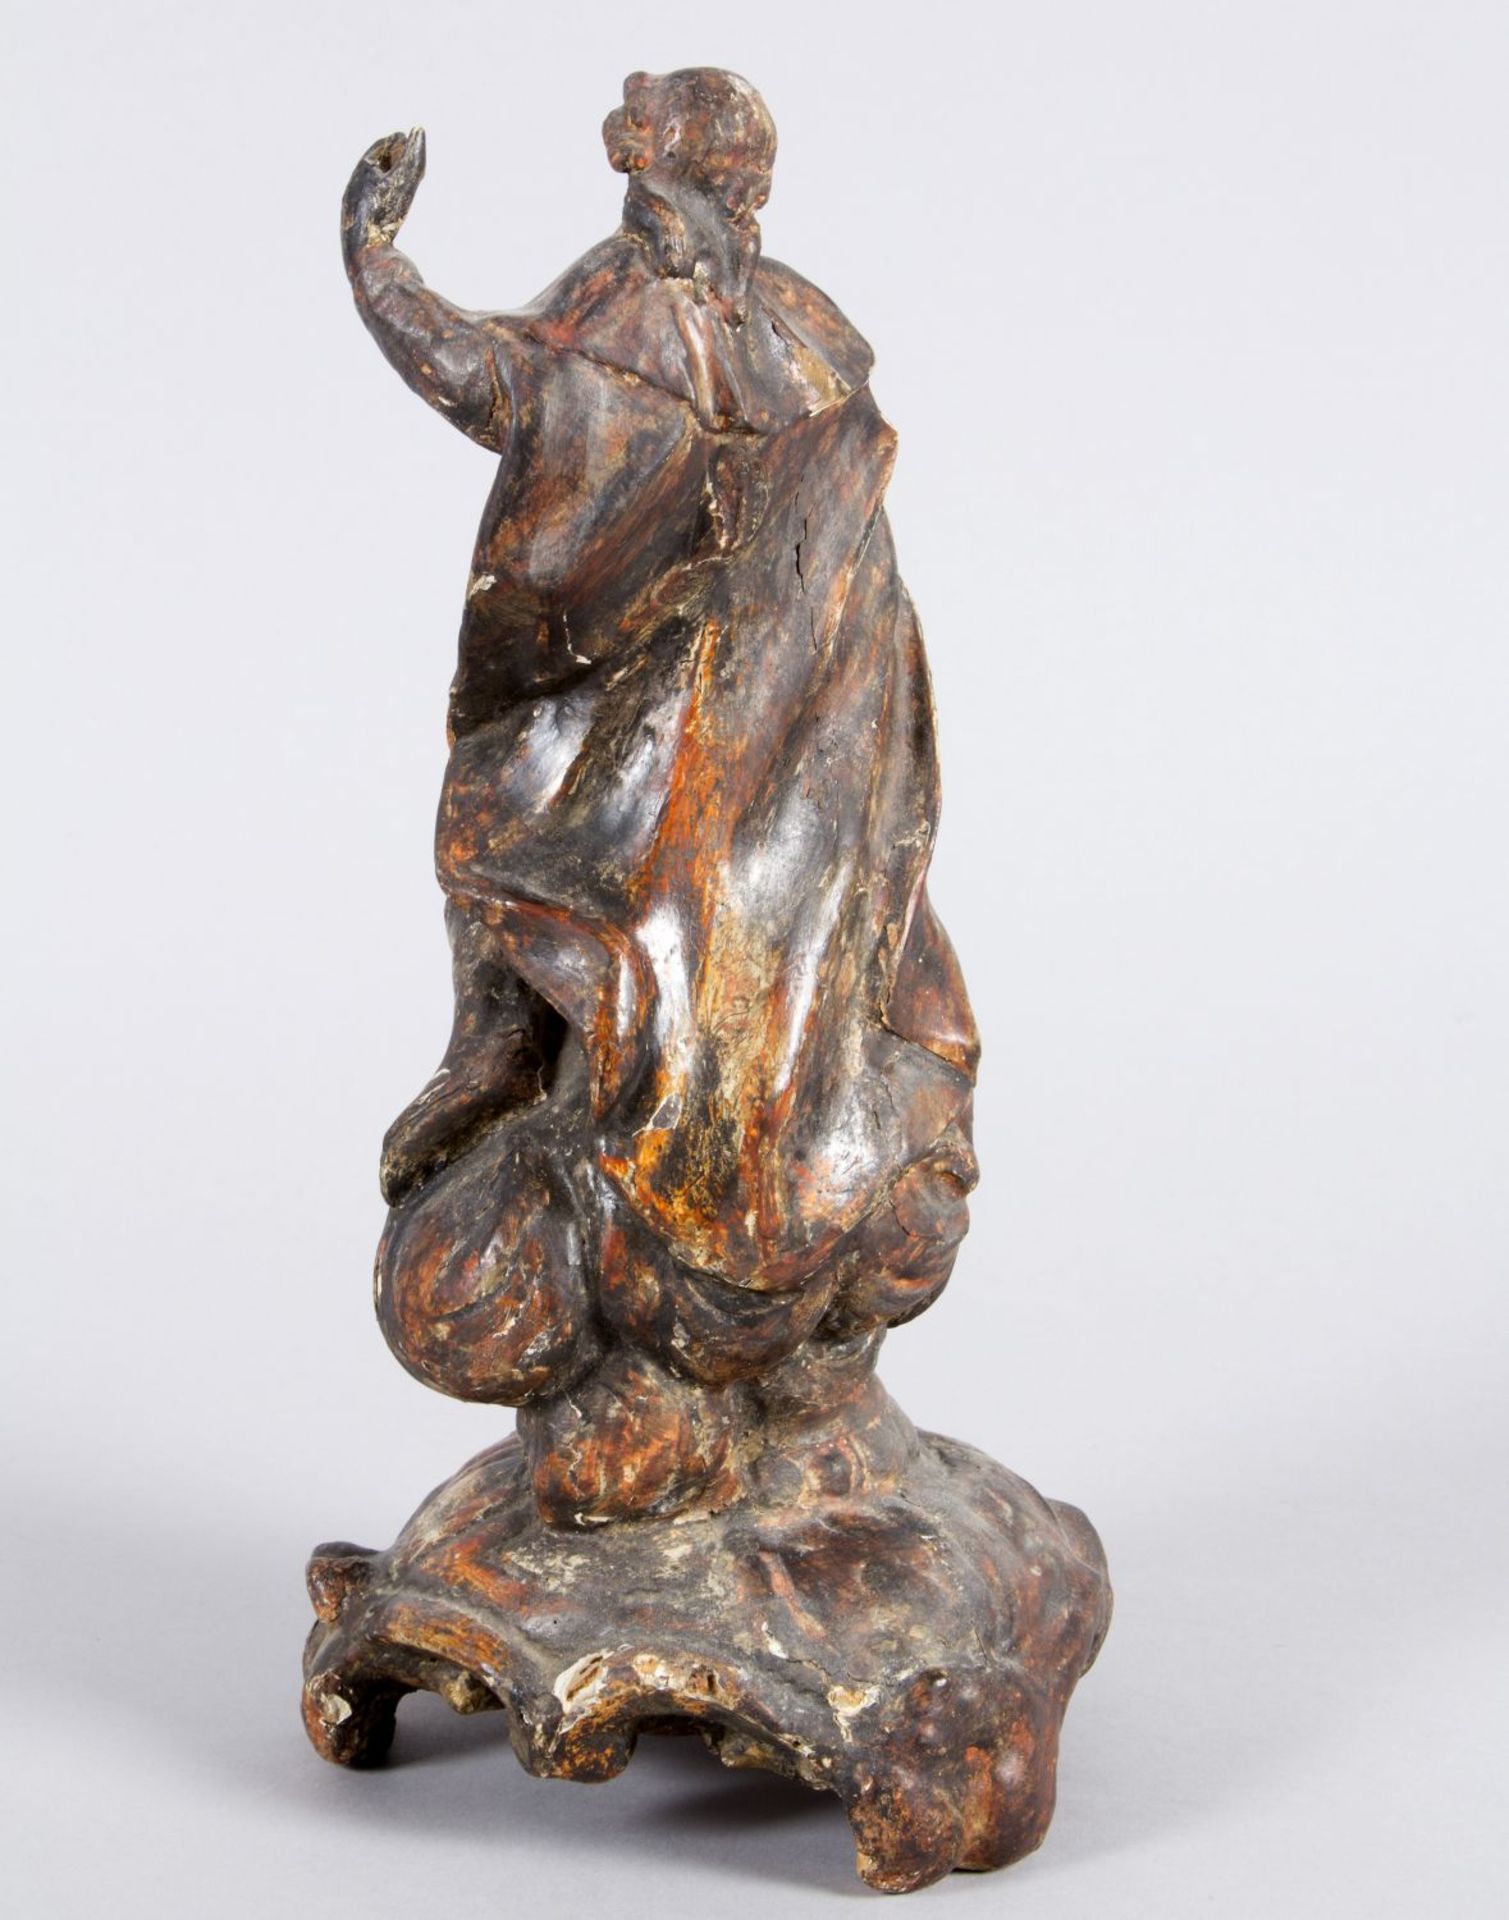 Heiligenfigur Holz, geschnitzt. Heiliger auf Wolkensaum mit Sockel. Südd., 18. Jh. H. 30 cm. Alterss - Bild 2 aus 2